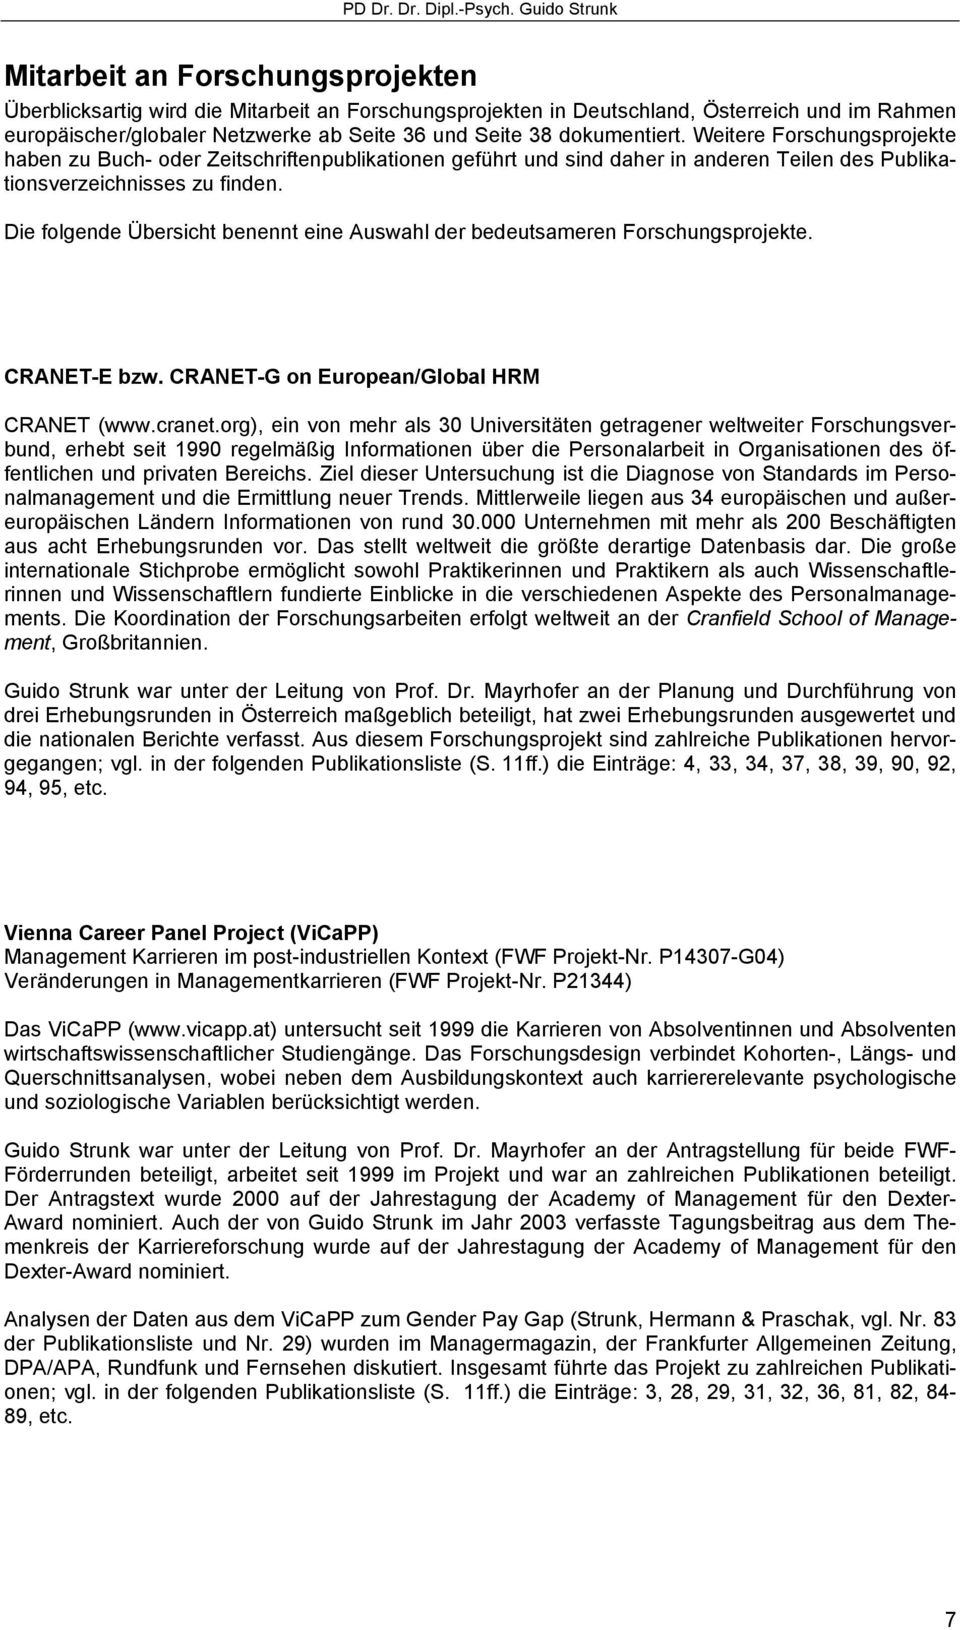 Die folgende Übersicht benennt eine Auswahl der bedeutsameren Forschungsprojekte. CRANET-E bzw. CRANET-G on European/Global HRM CRANET (www.cranet.